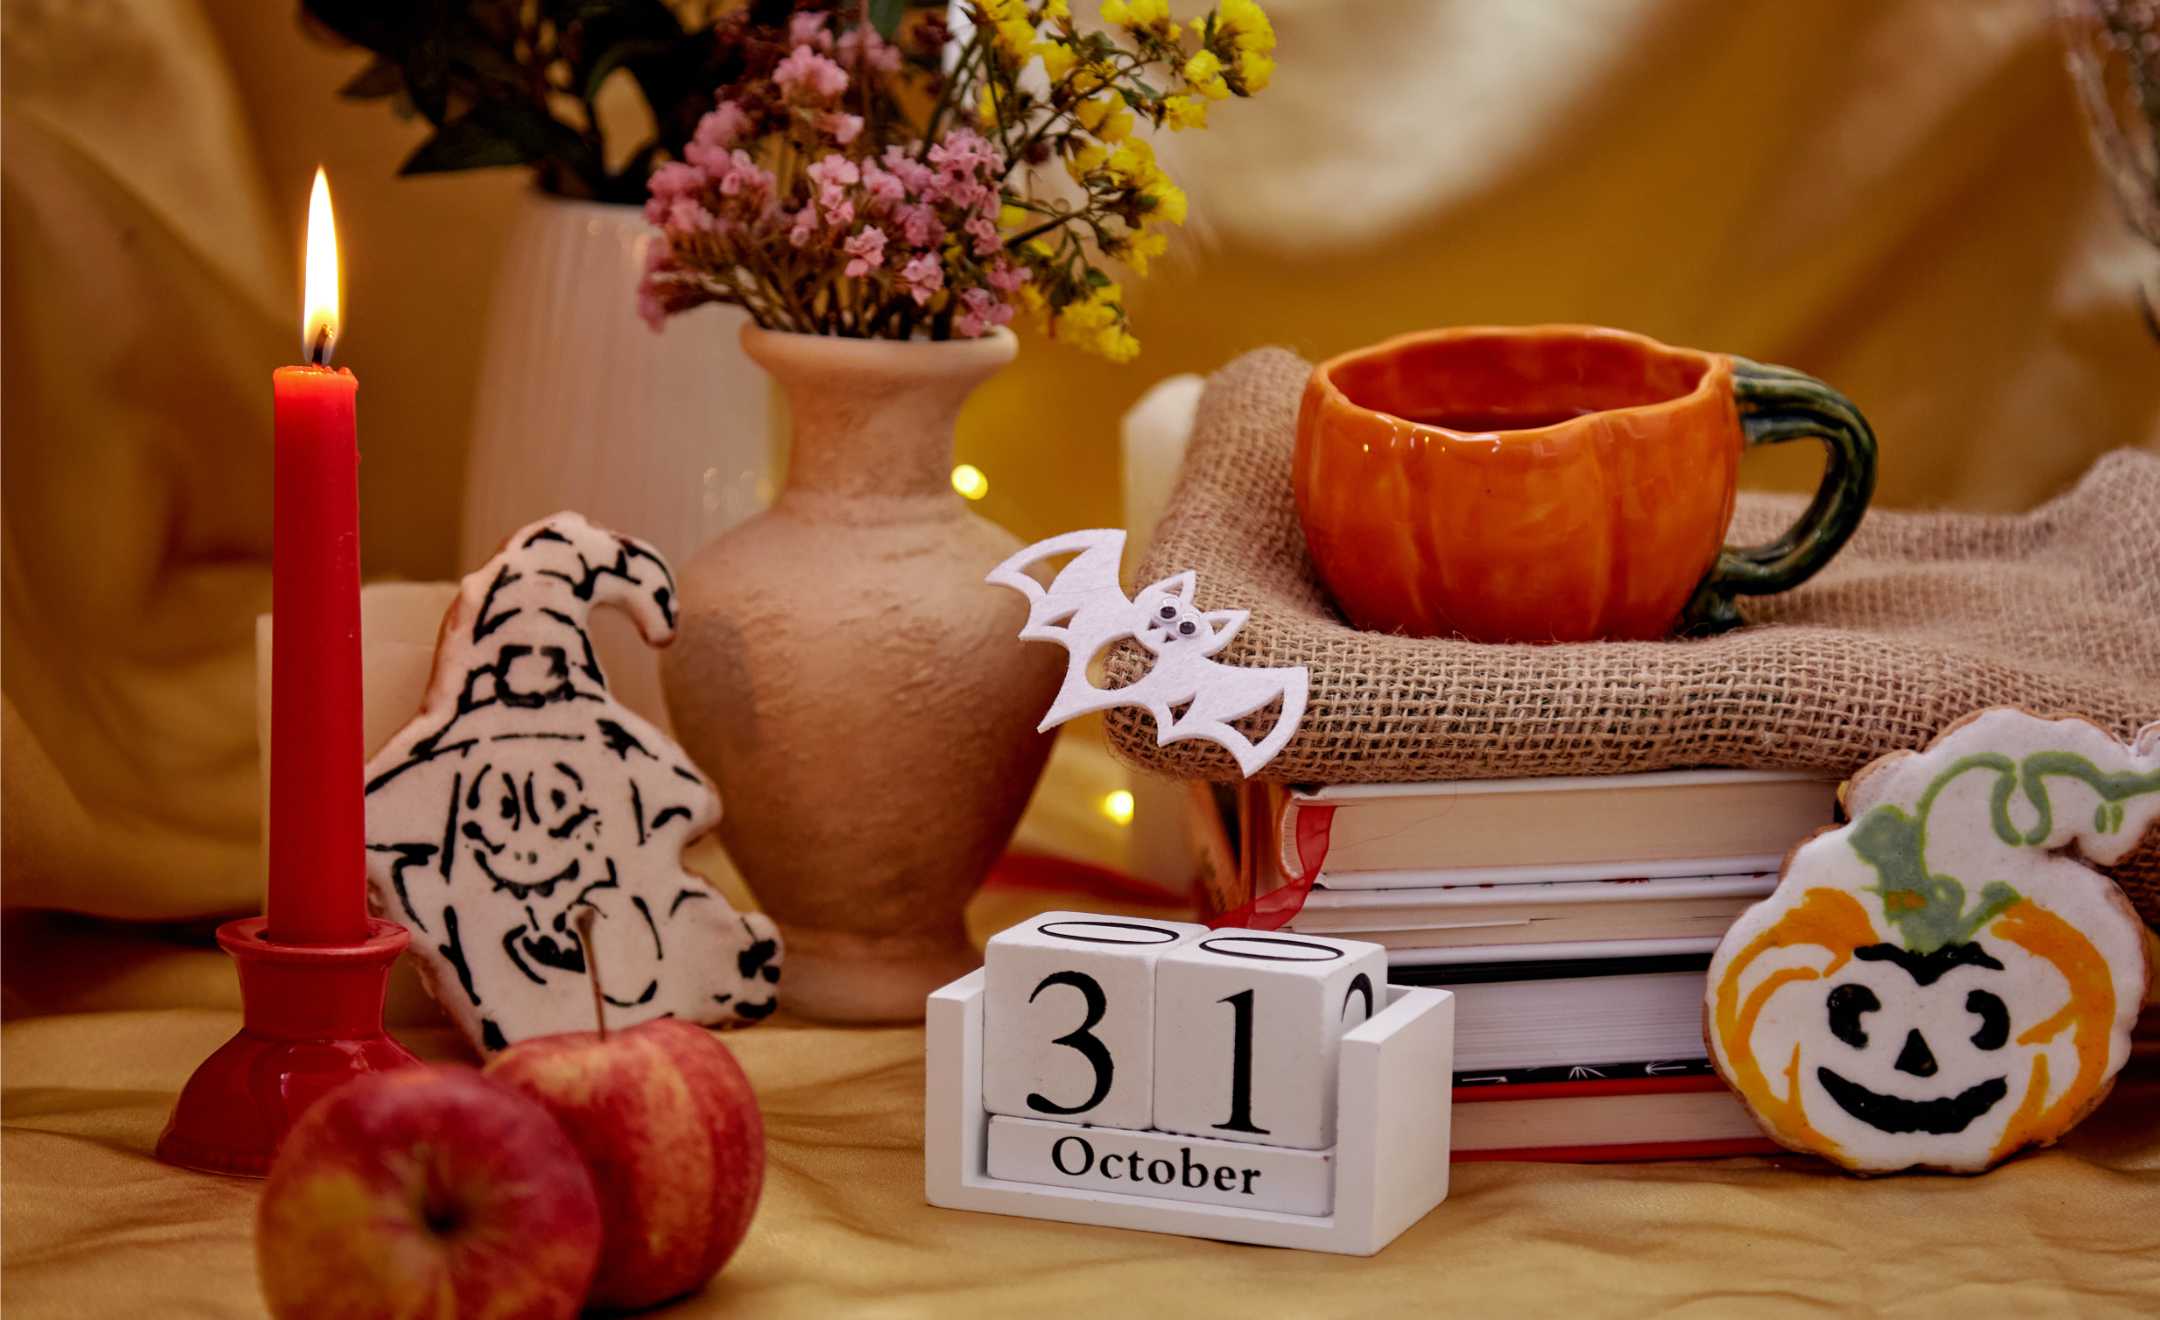 viele Halloween-Dekoartikel zusammengestellt, brennende Kerze, Kürbis-Tasse mit Tee, Blumen im Terrakotta-Topf, Kekse als Kürbis und Hexe, Fledermaus aus Filz ausgeschnitten, Holzblock-Kalender mit 31 Oktober